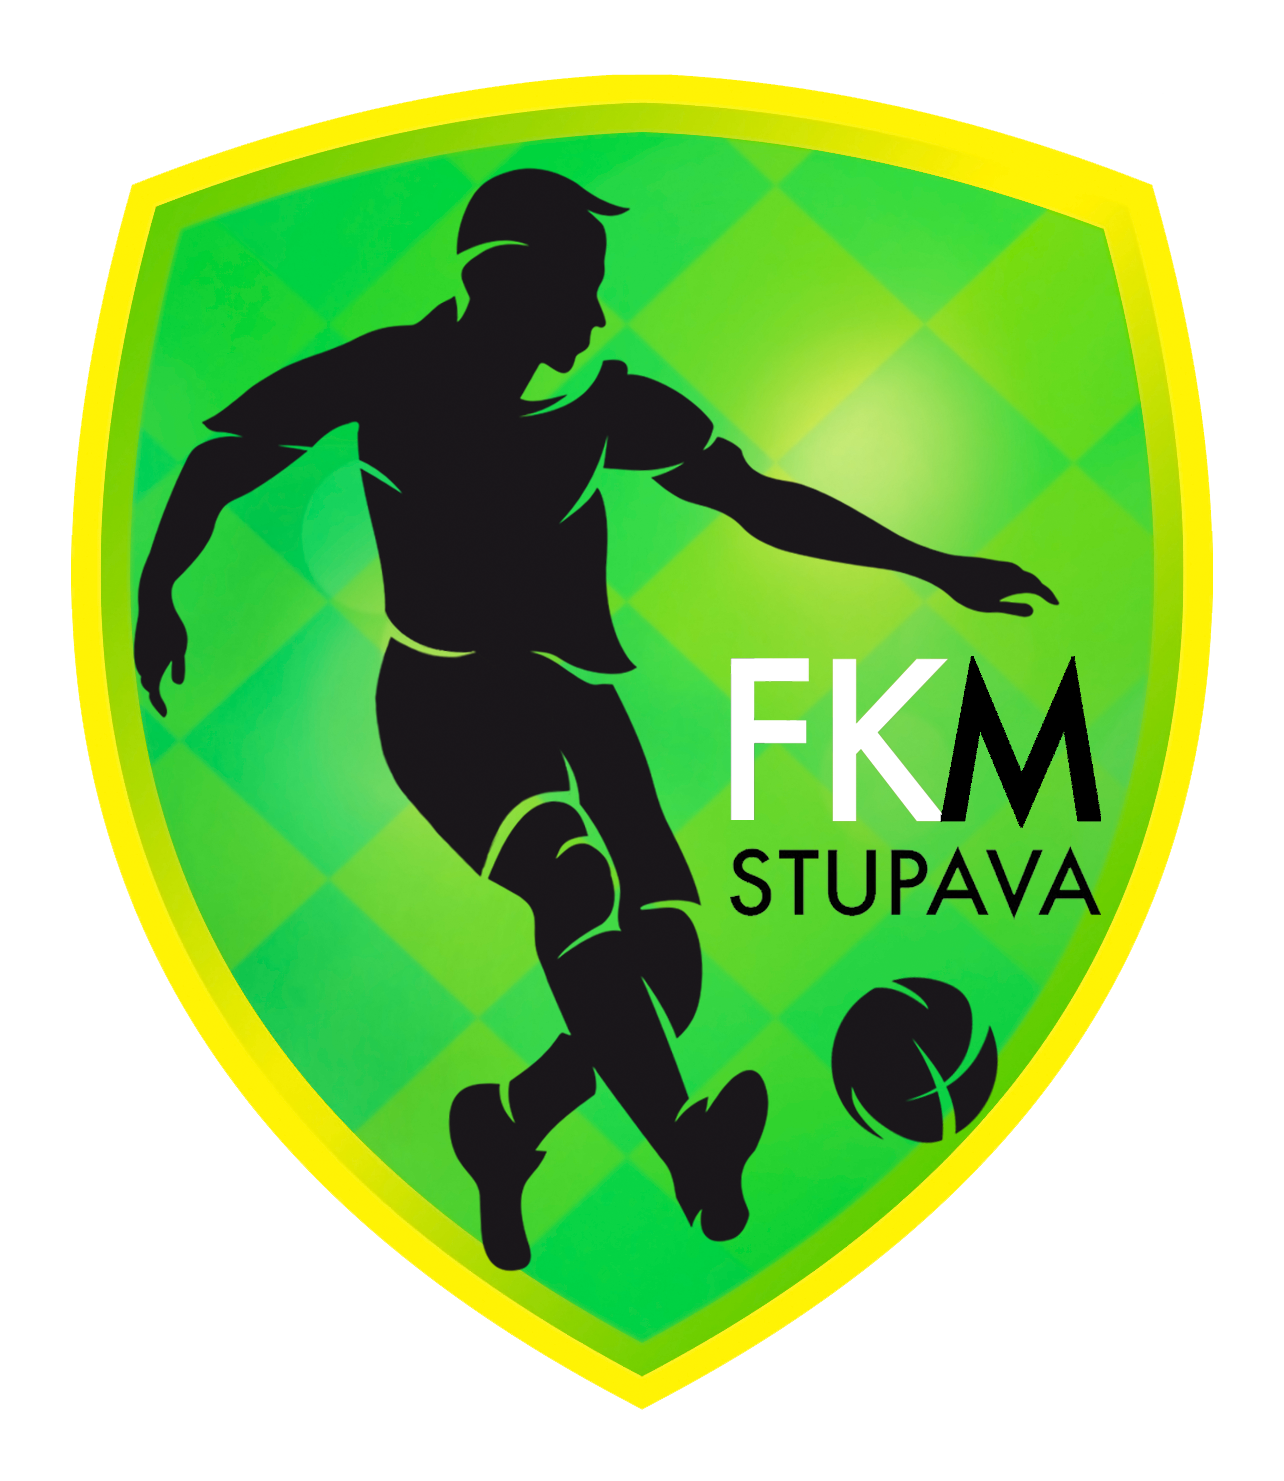 FKM Stupava logo